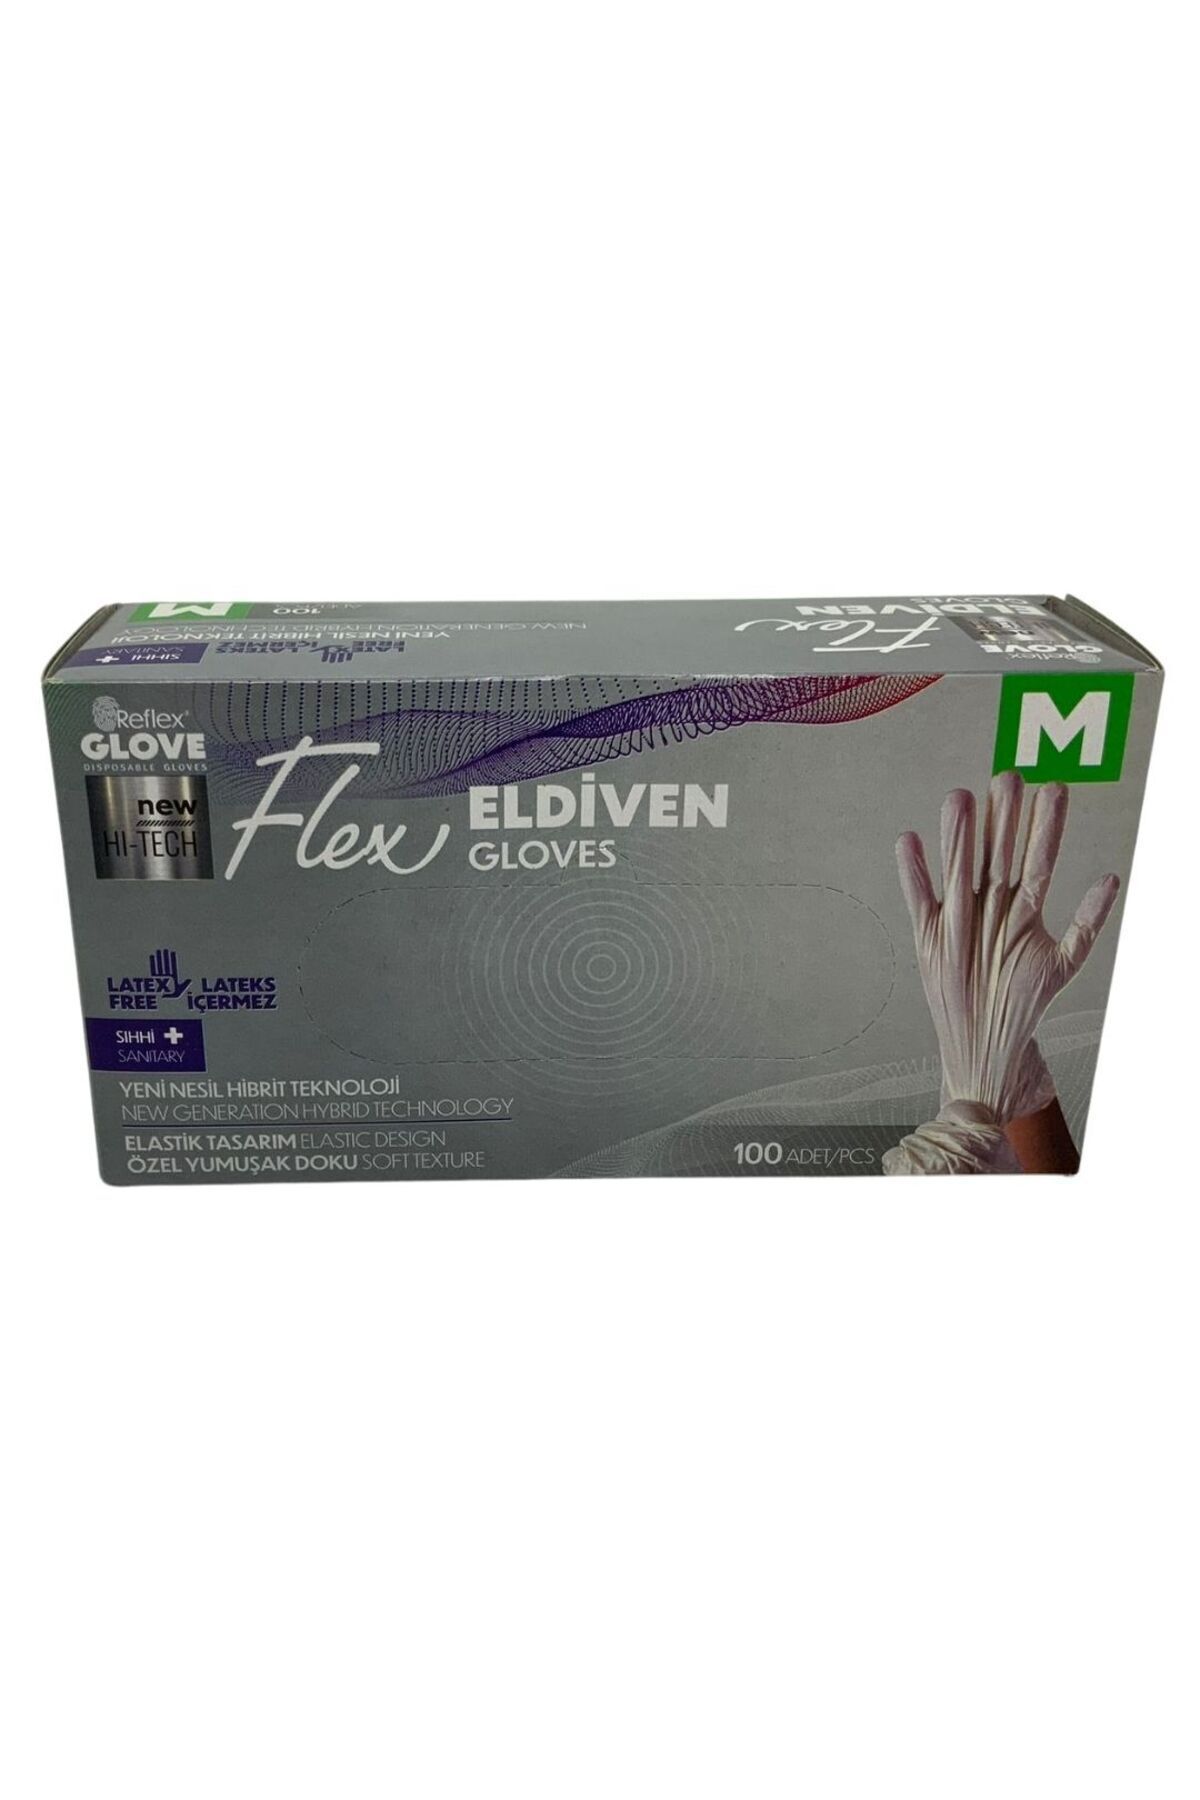 Reflex Glove Flex Eldiven M 100 Adet